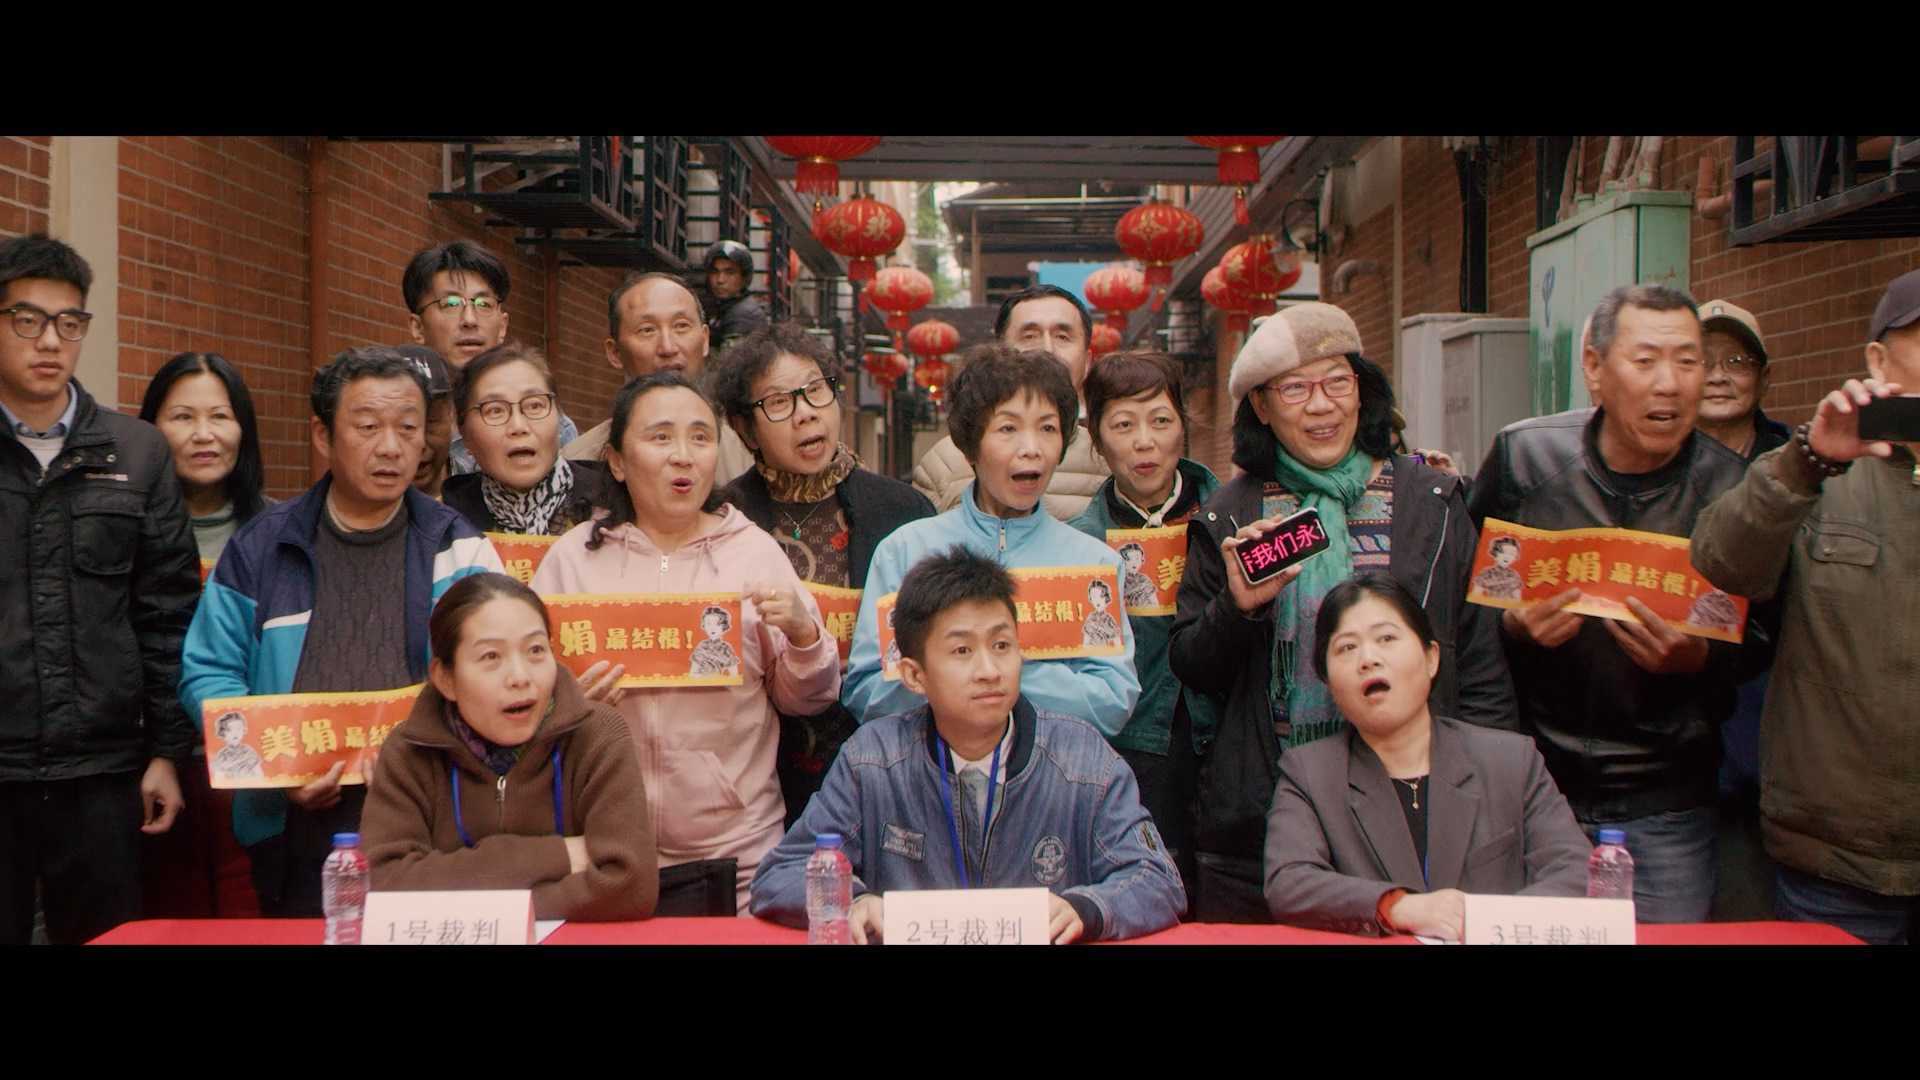 都是花样“JING”-上海55购物节宣传片